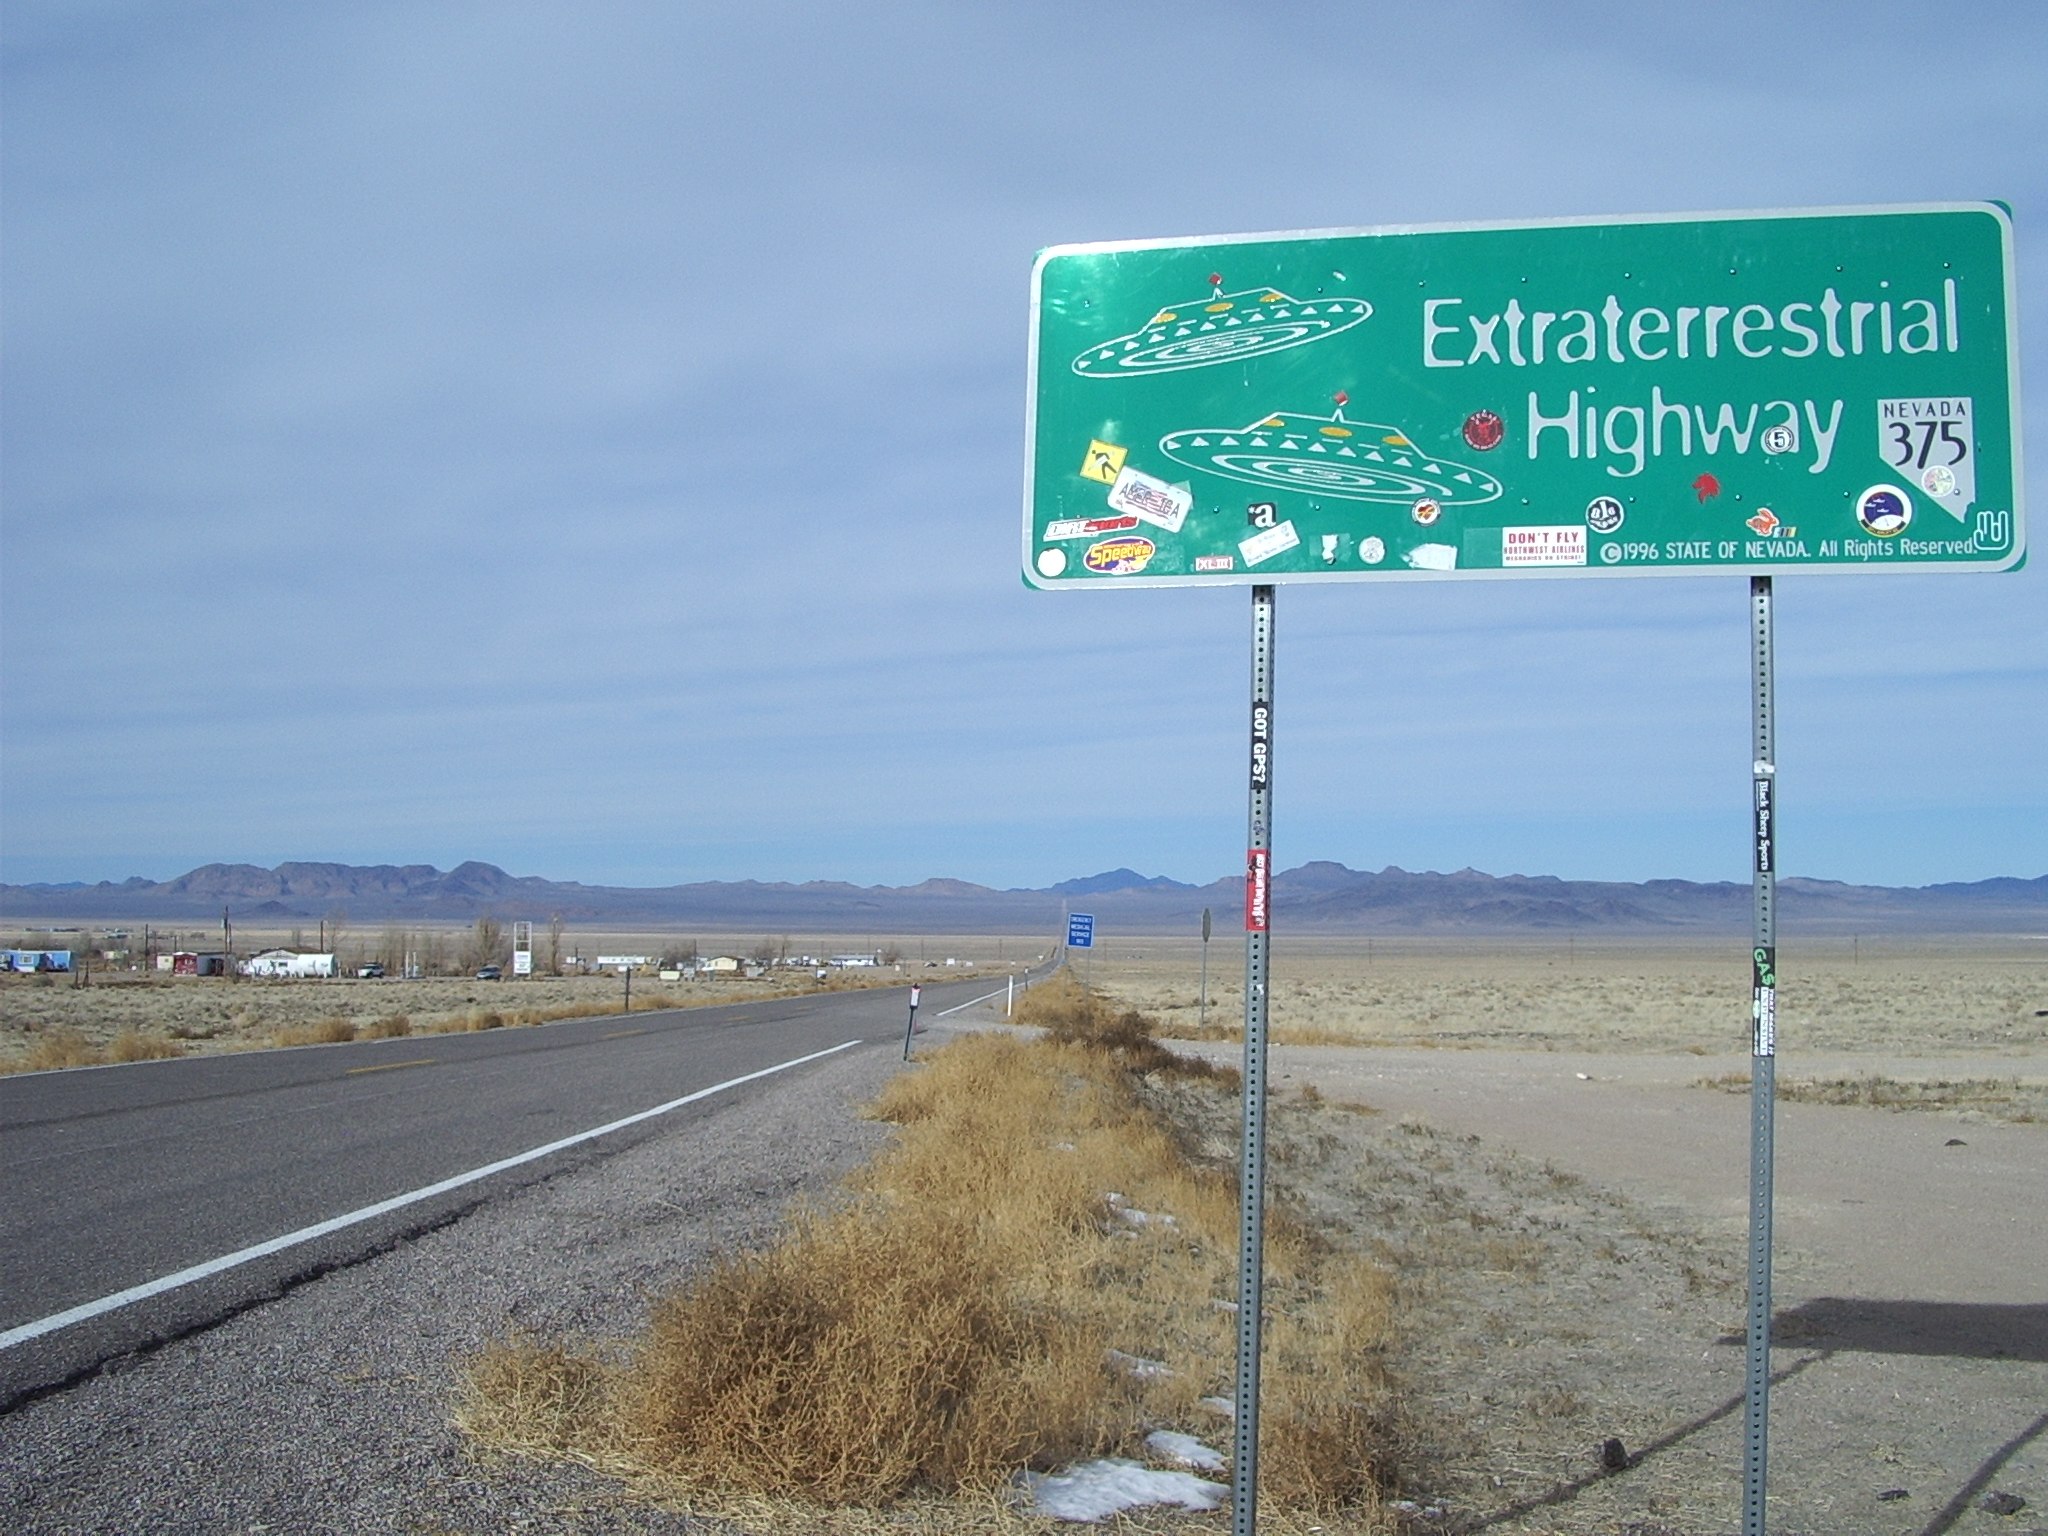 Bild: User Kvasir of wp:en, Extraterrestrial-highway, CC BY 2.5, via Wikimedia Commons (keine Änderungen vorgenommen)